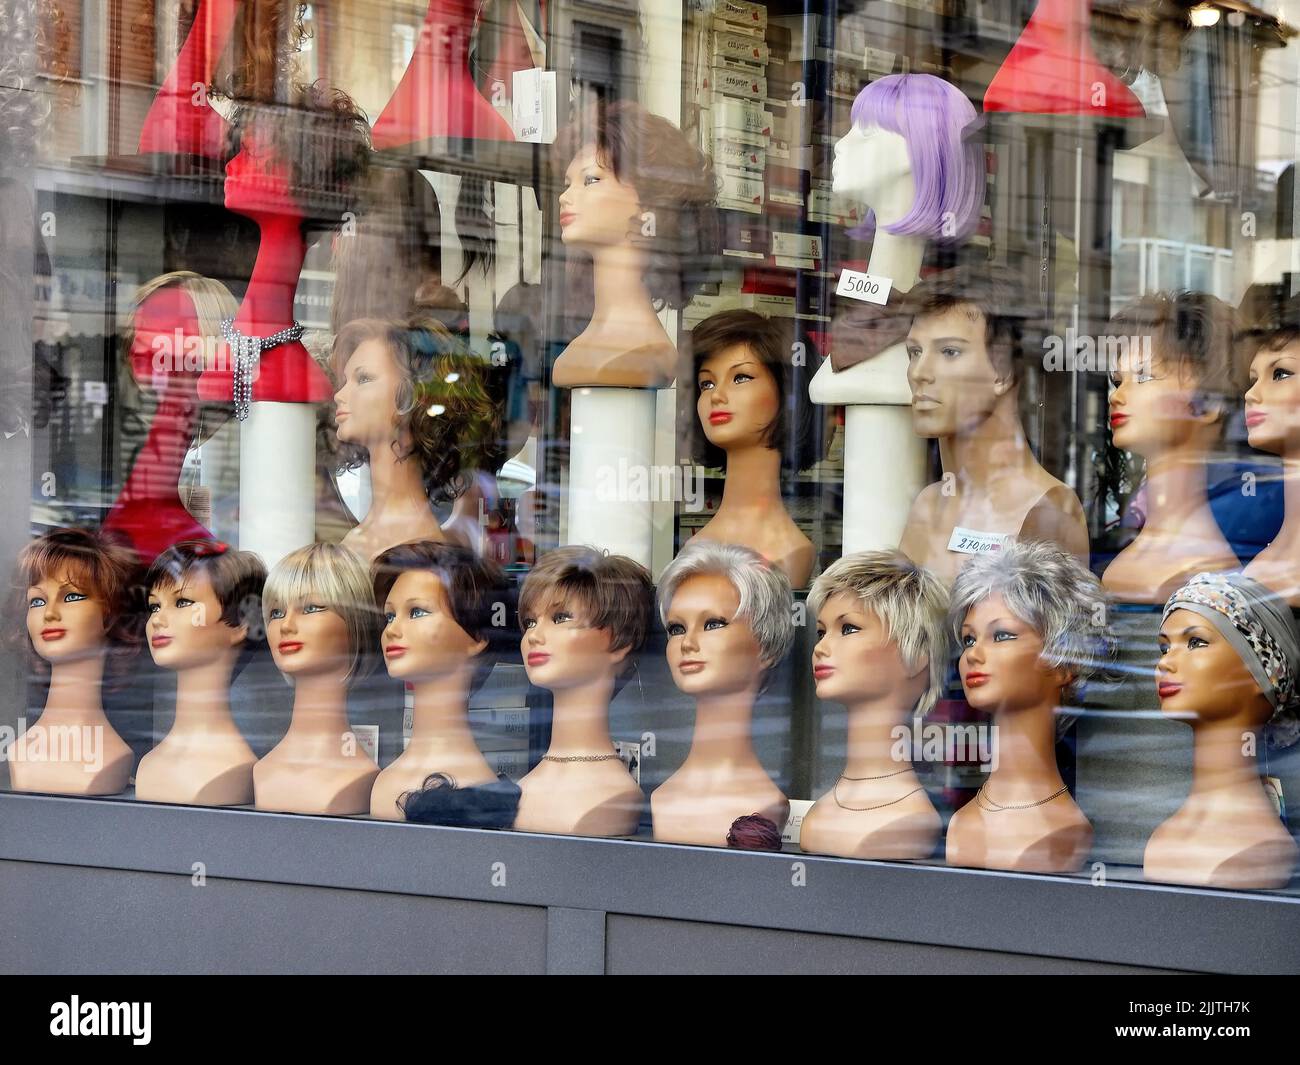 Une belle photo d'une fenêtre de magasin de perruques avec différents types de perruques Banque D'Images